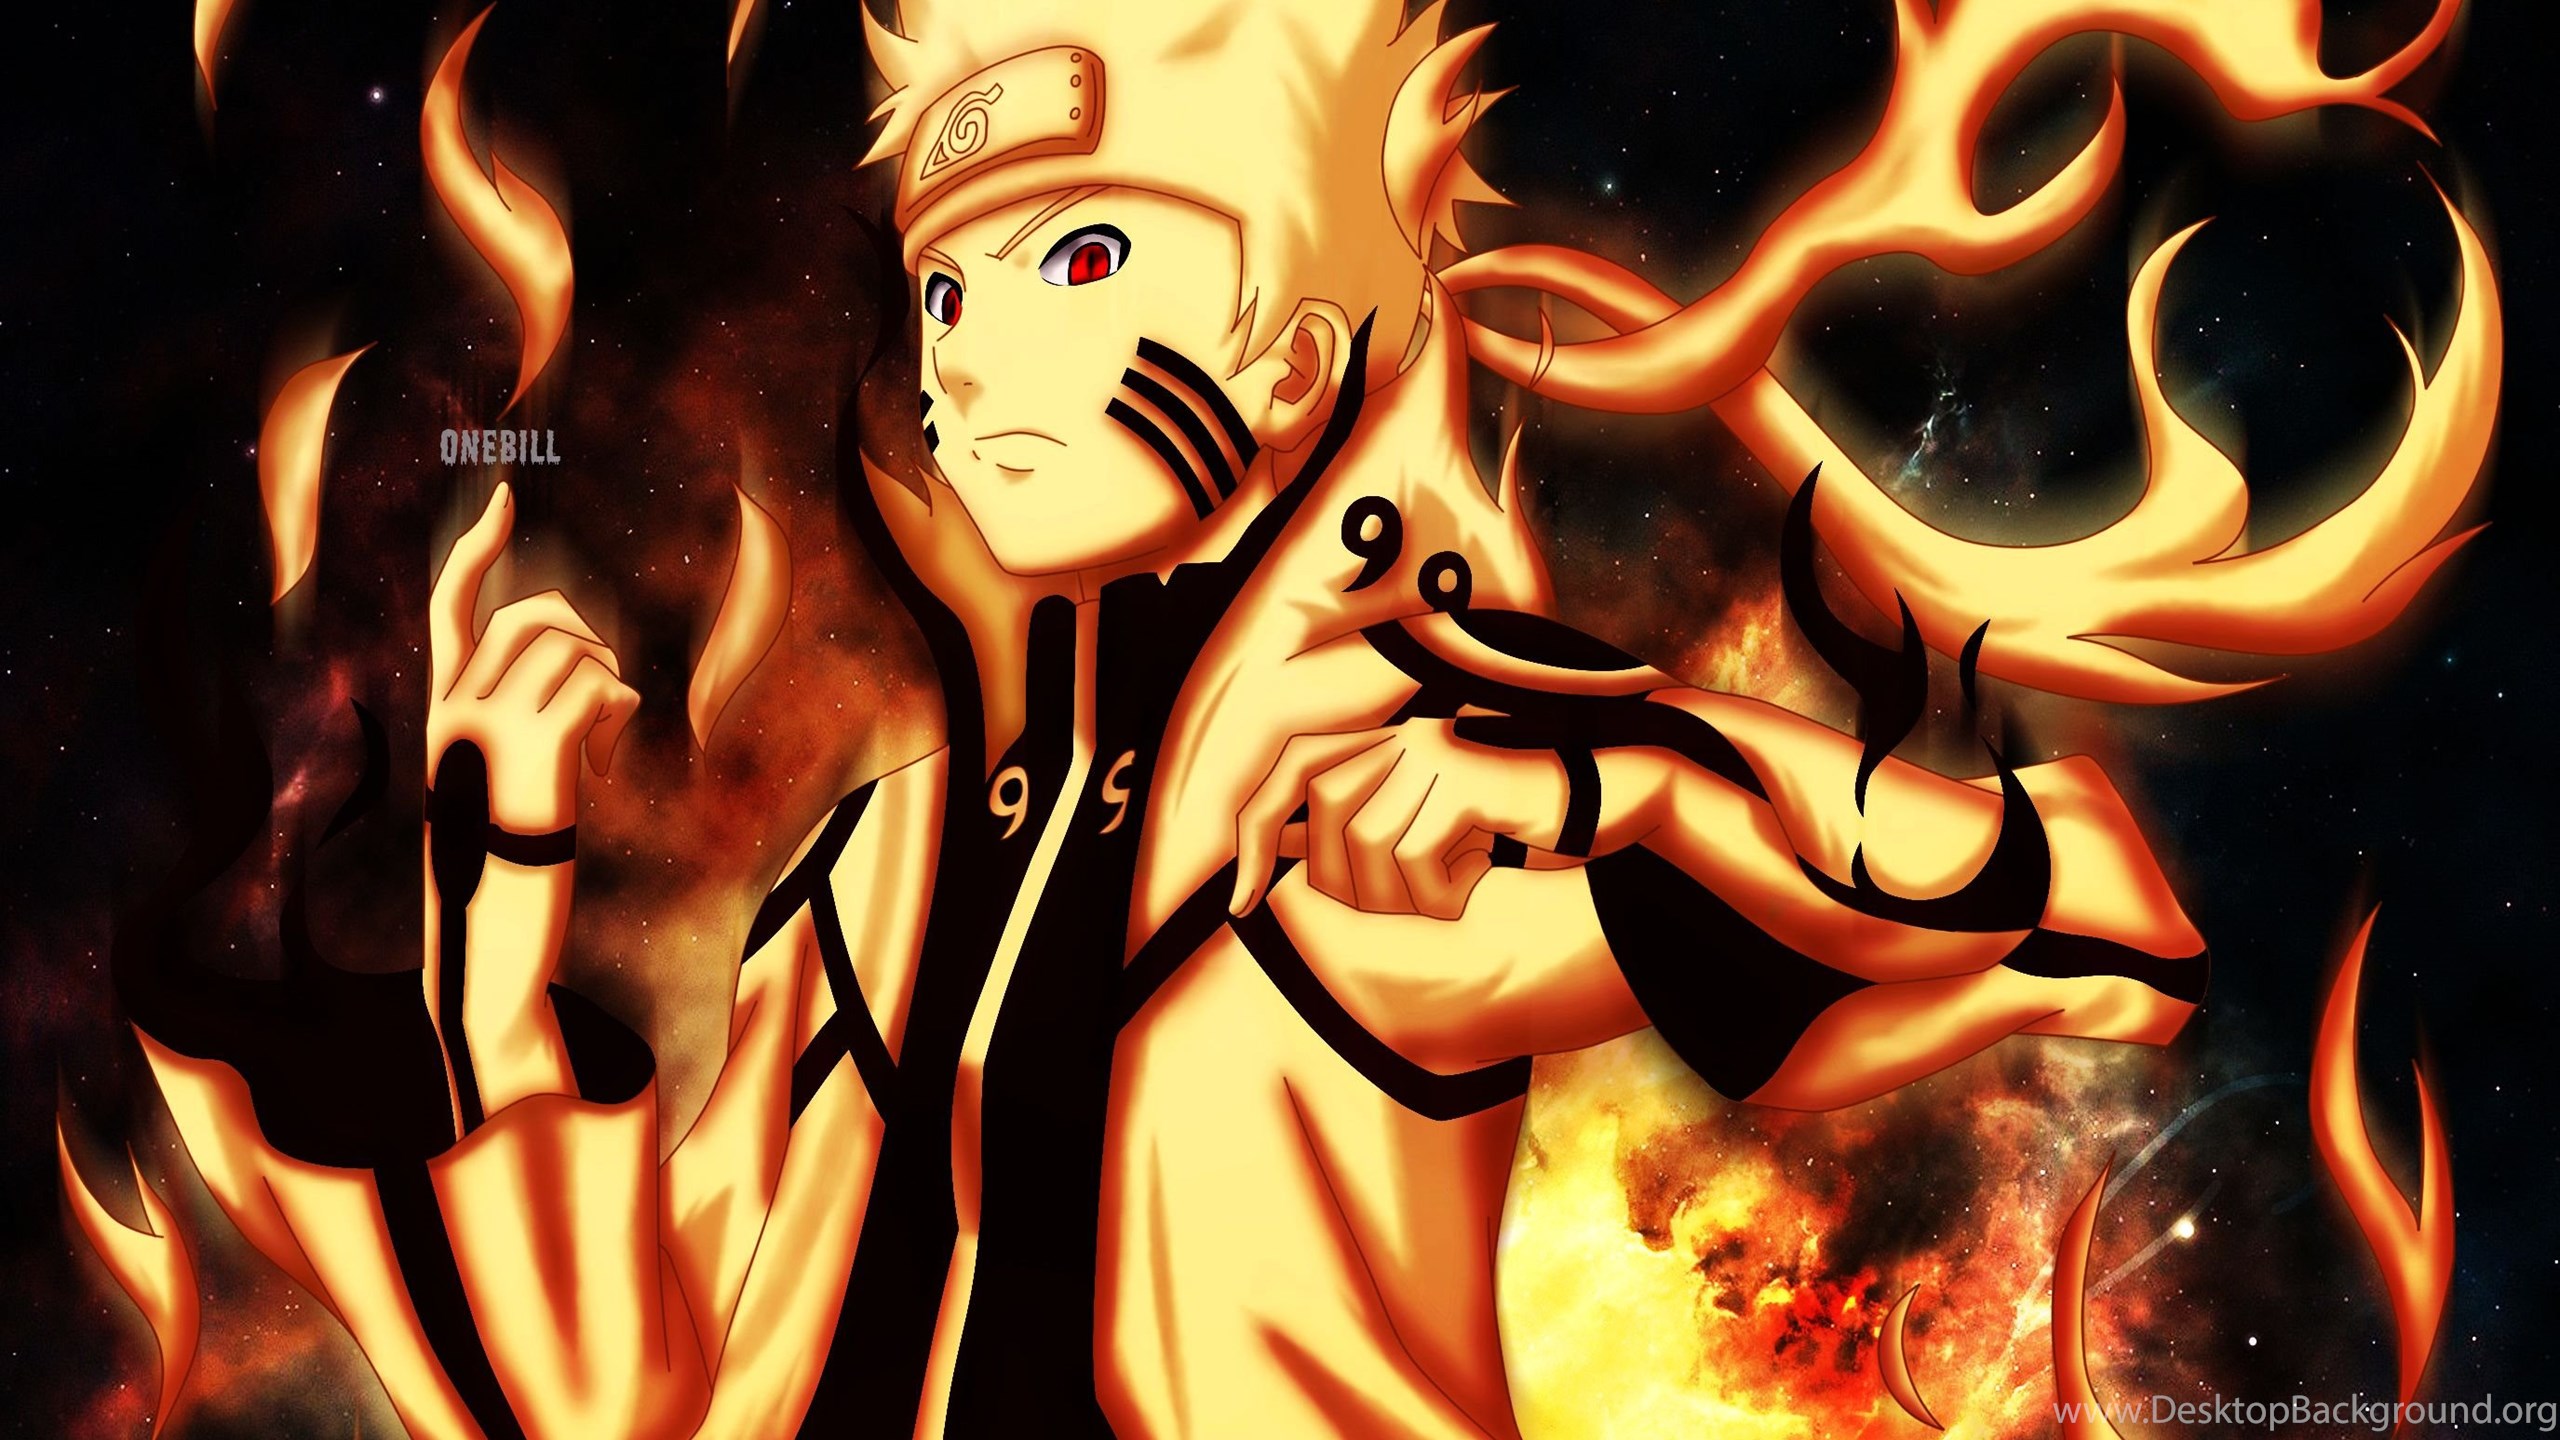 Gambar Naruto Full Hd gambar ke 19